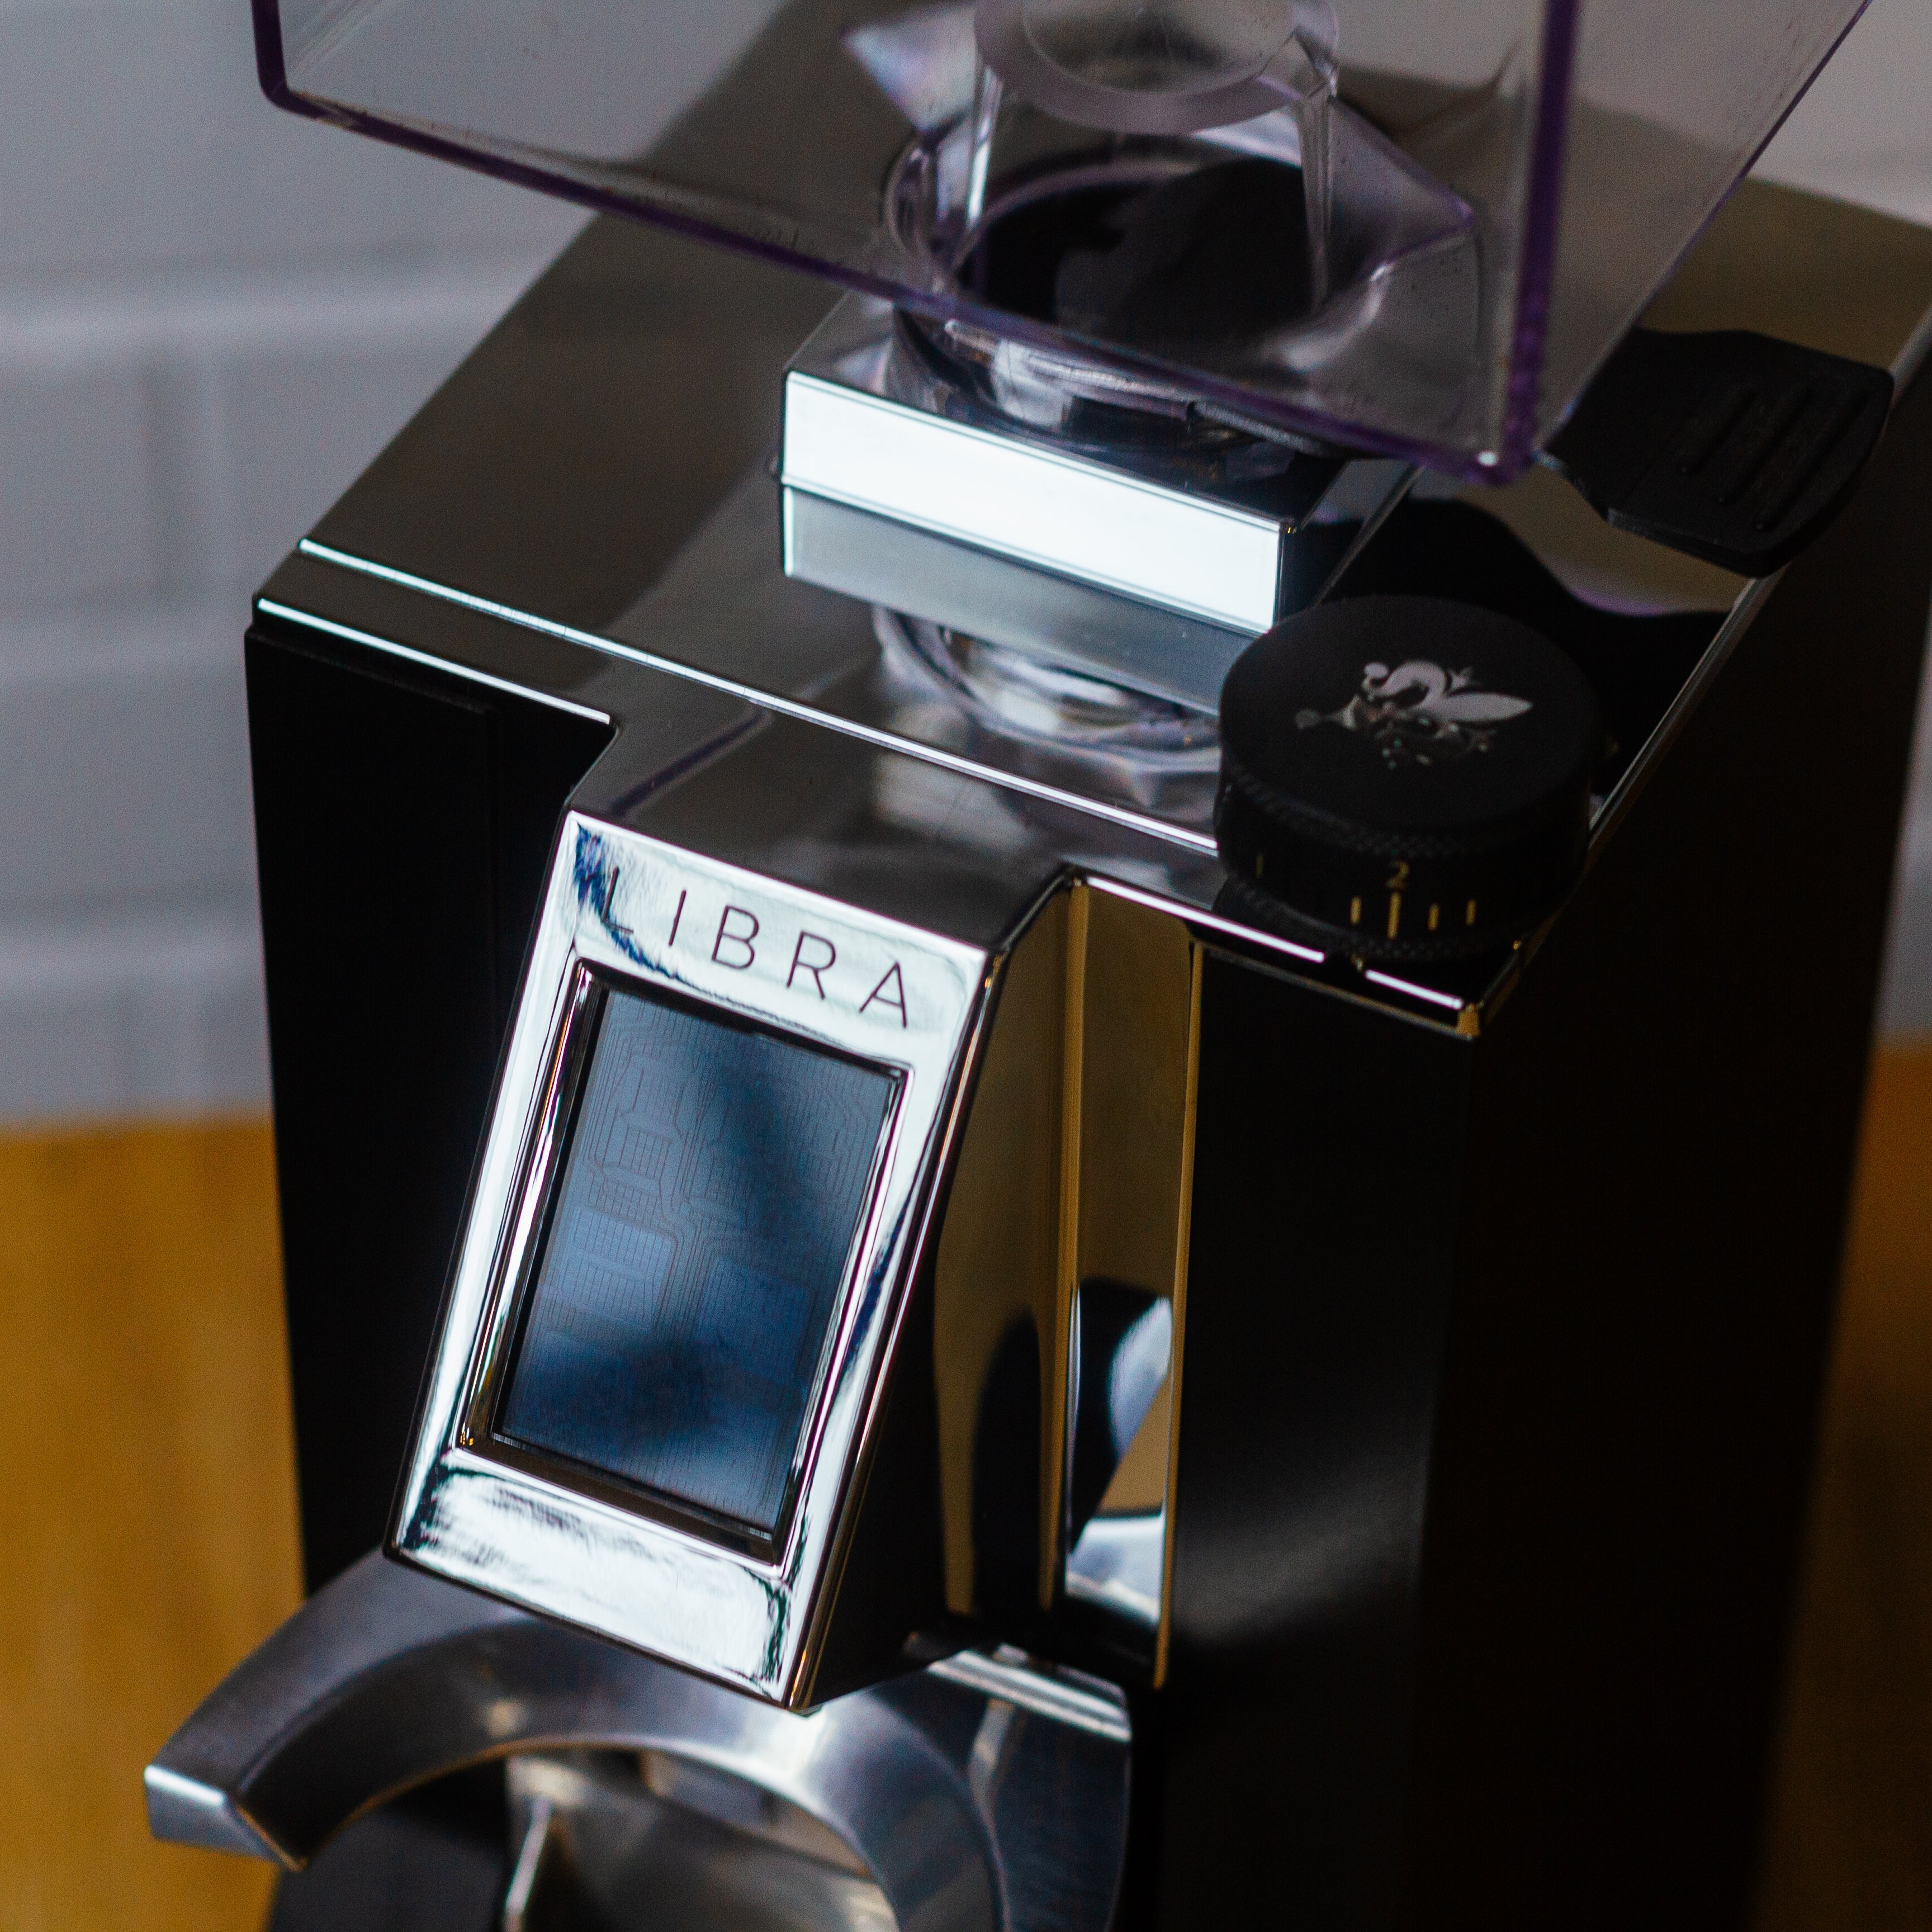 Le Libra Grinder est un moulin à café de haute qualité conçu pour les  amateurs de café qui exigent précision et constance dans leur café. Ce  moulin est construit avec un moteur